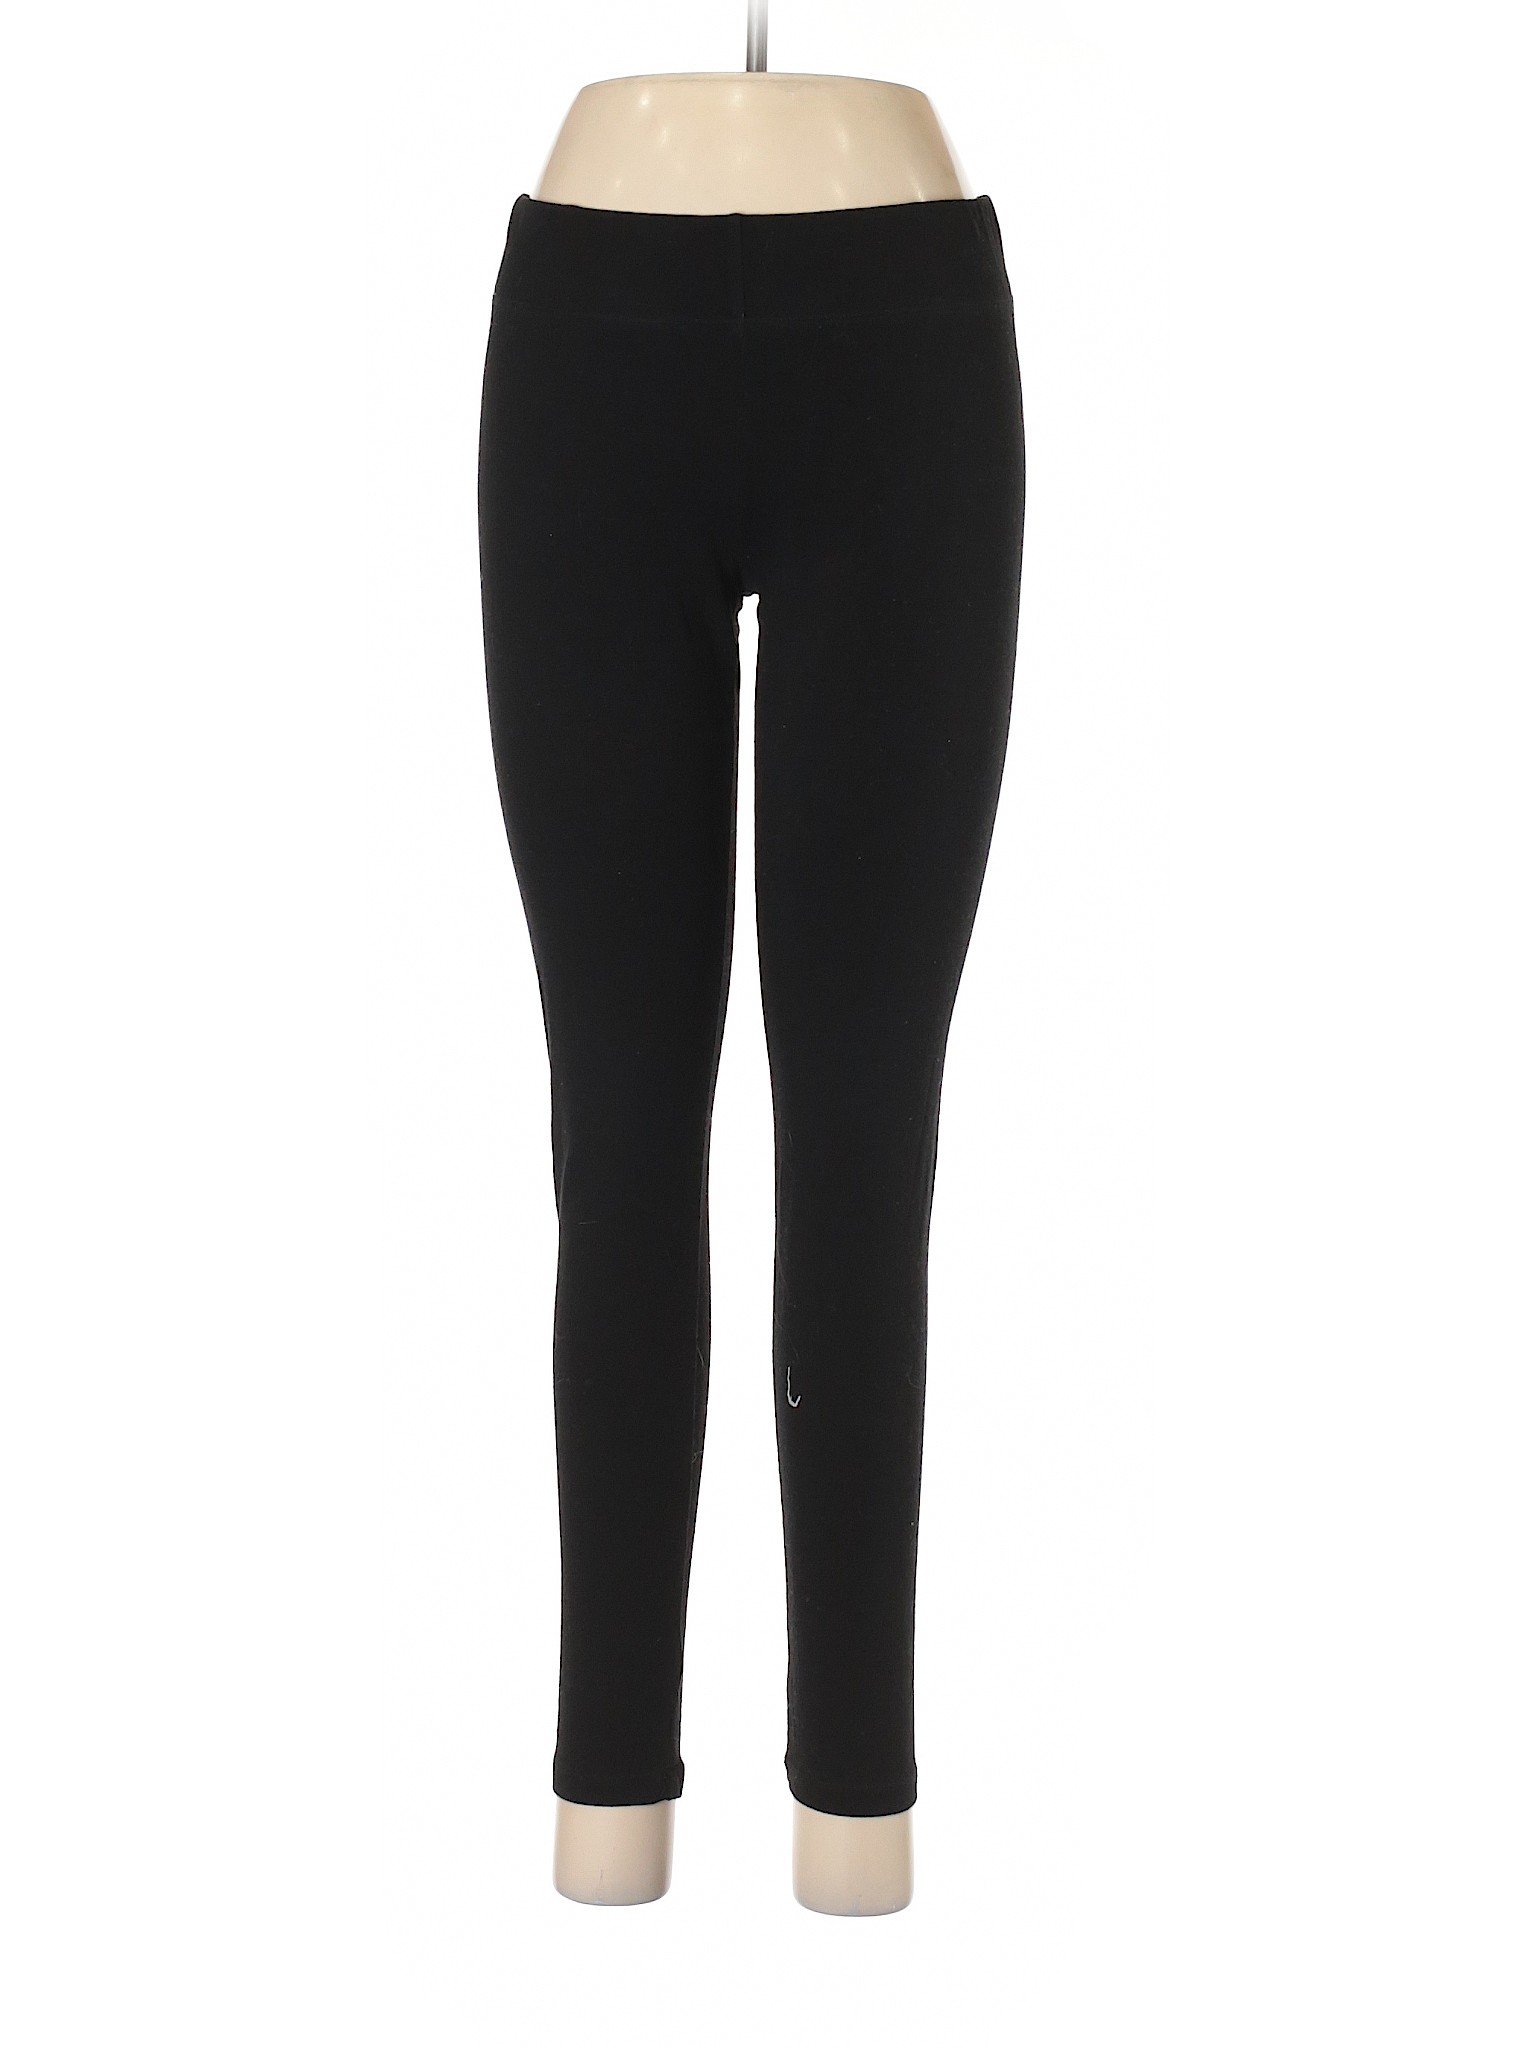 Unbranded Women Black Leggings M | eBay